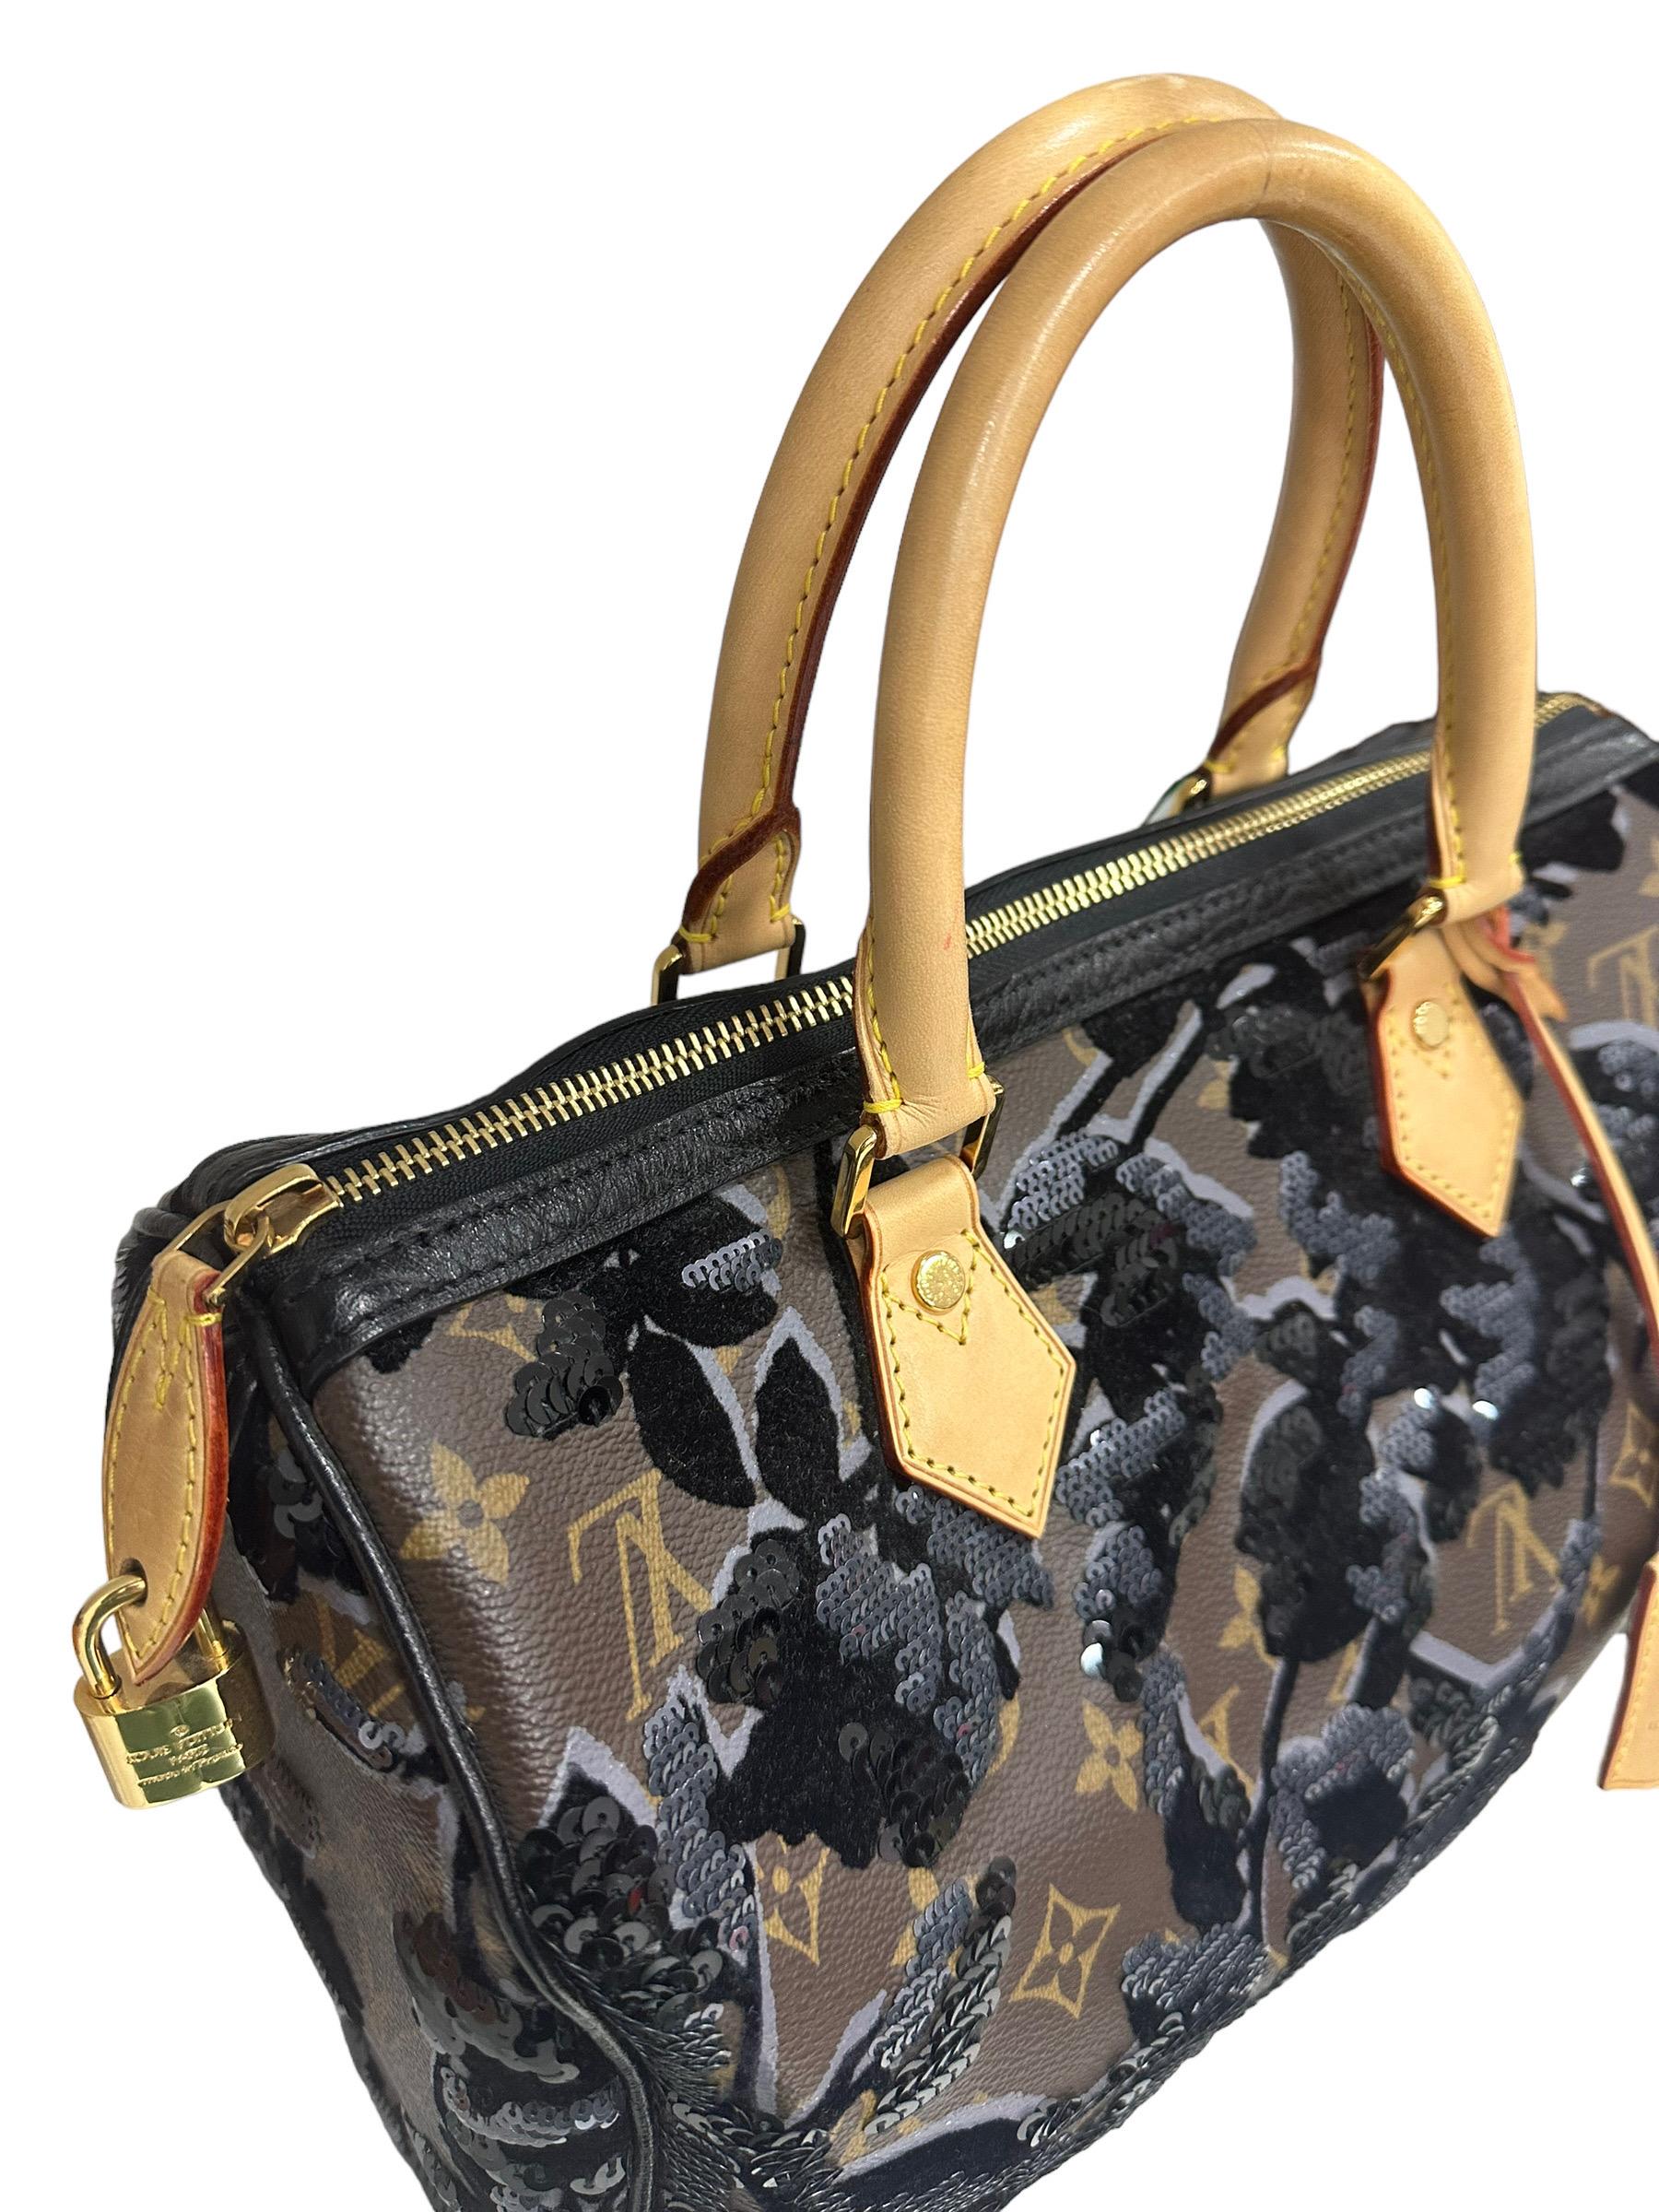 Women's 2011 Louis Vuitton Speedy 30 Fleur De Jais Limited Edition Top Handle Bag